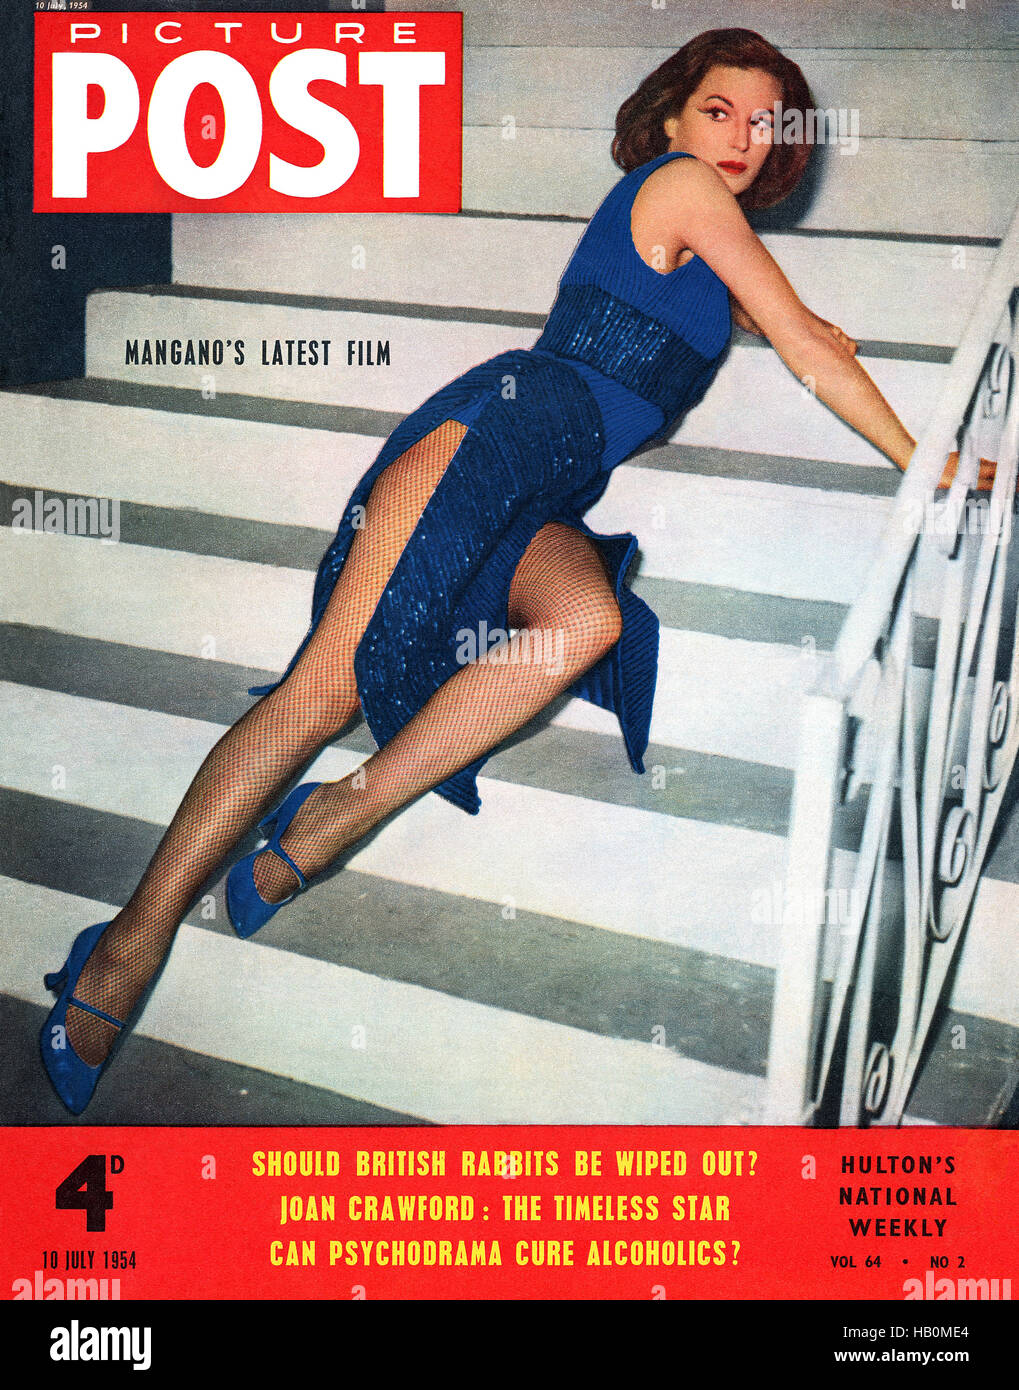 Vordere Abdeckung des Picture Post Magazin für 10. Juli 1954, mit Schauspielerin Silvana Mangano fotografiert von Federico Patellani Stockfoto